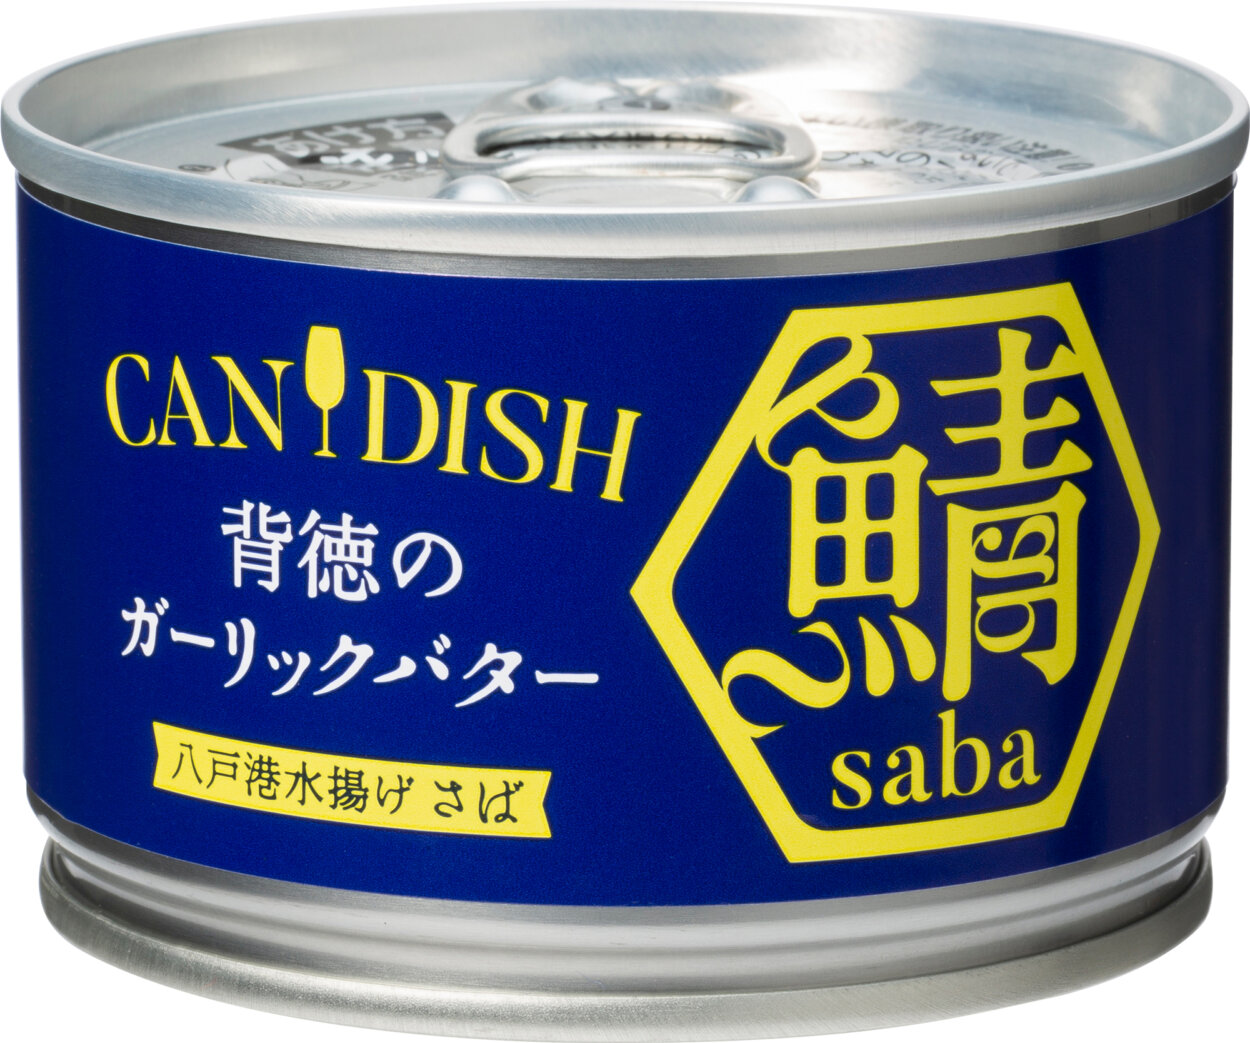 「CANDISH saba 背徳のガーリックバター」（410円）。缶を開けるだけでそのままおつまみや食事の一品になる缶詰を、と開発された